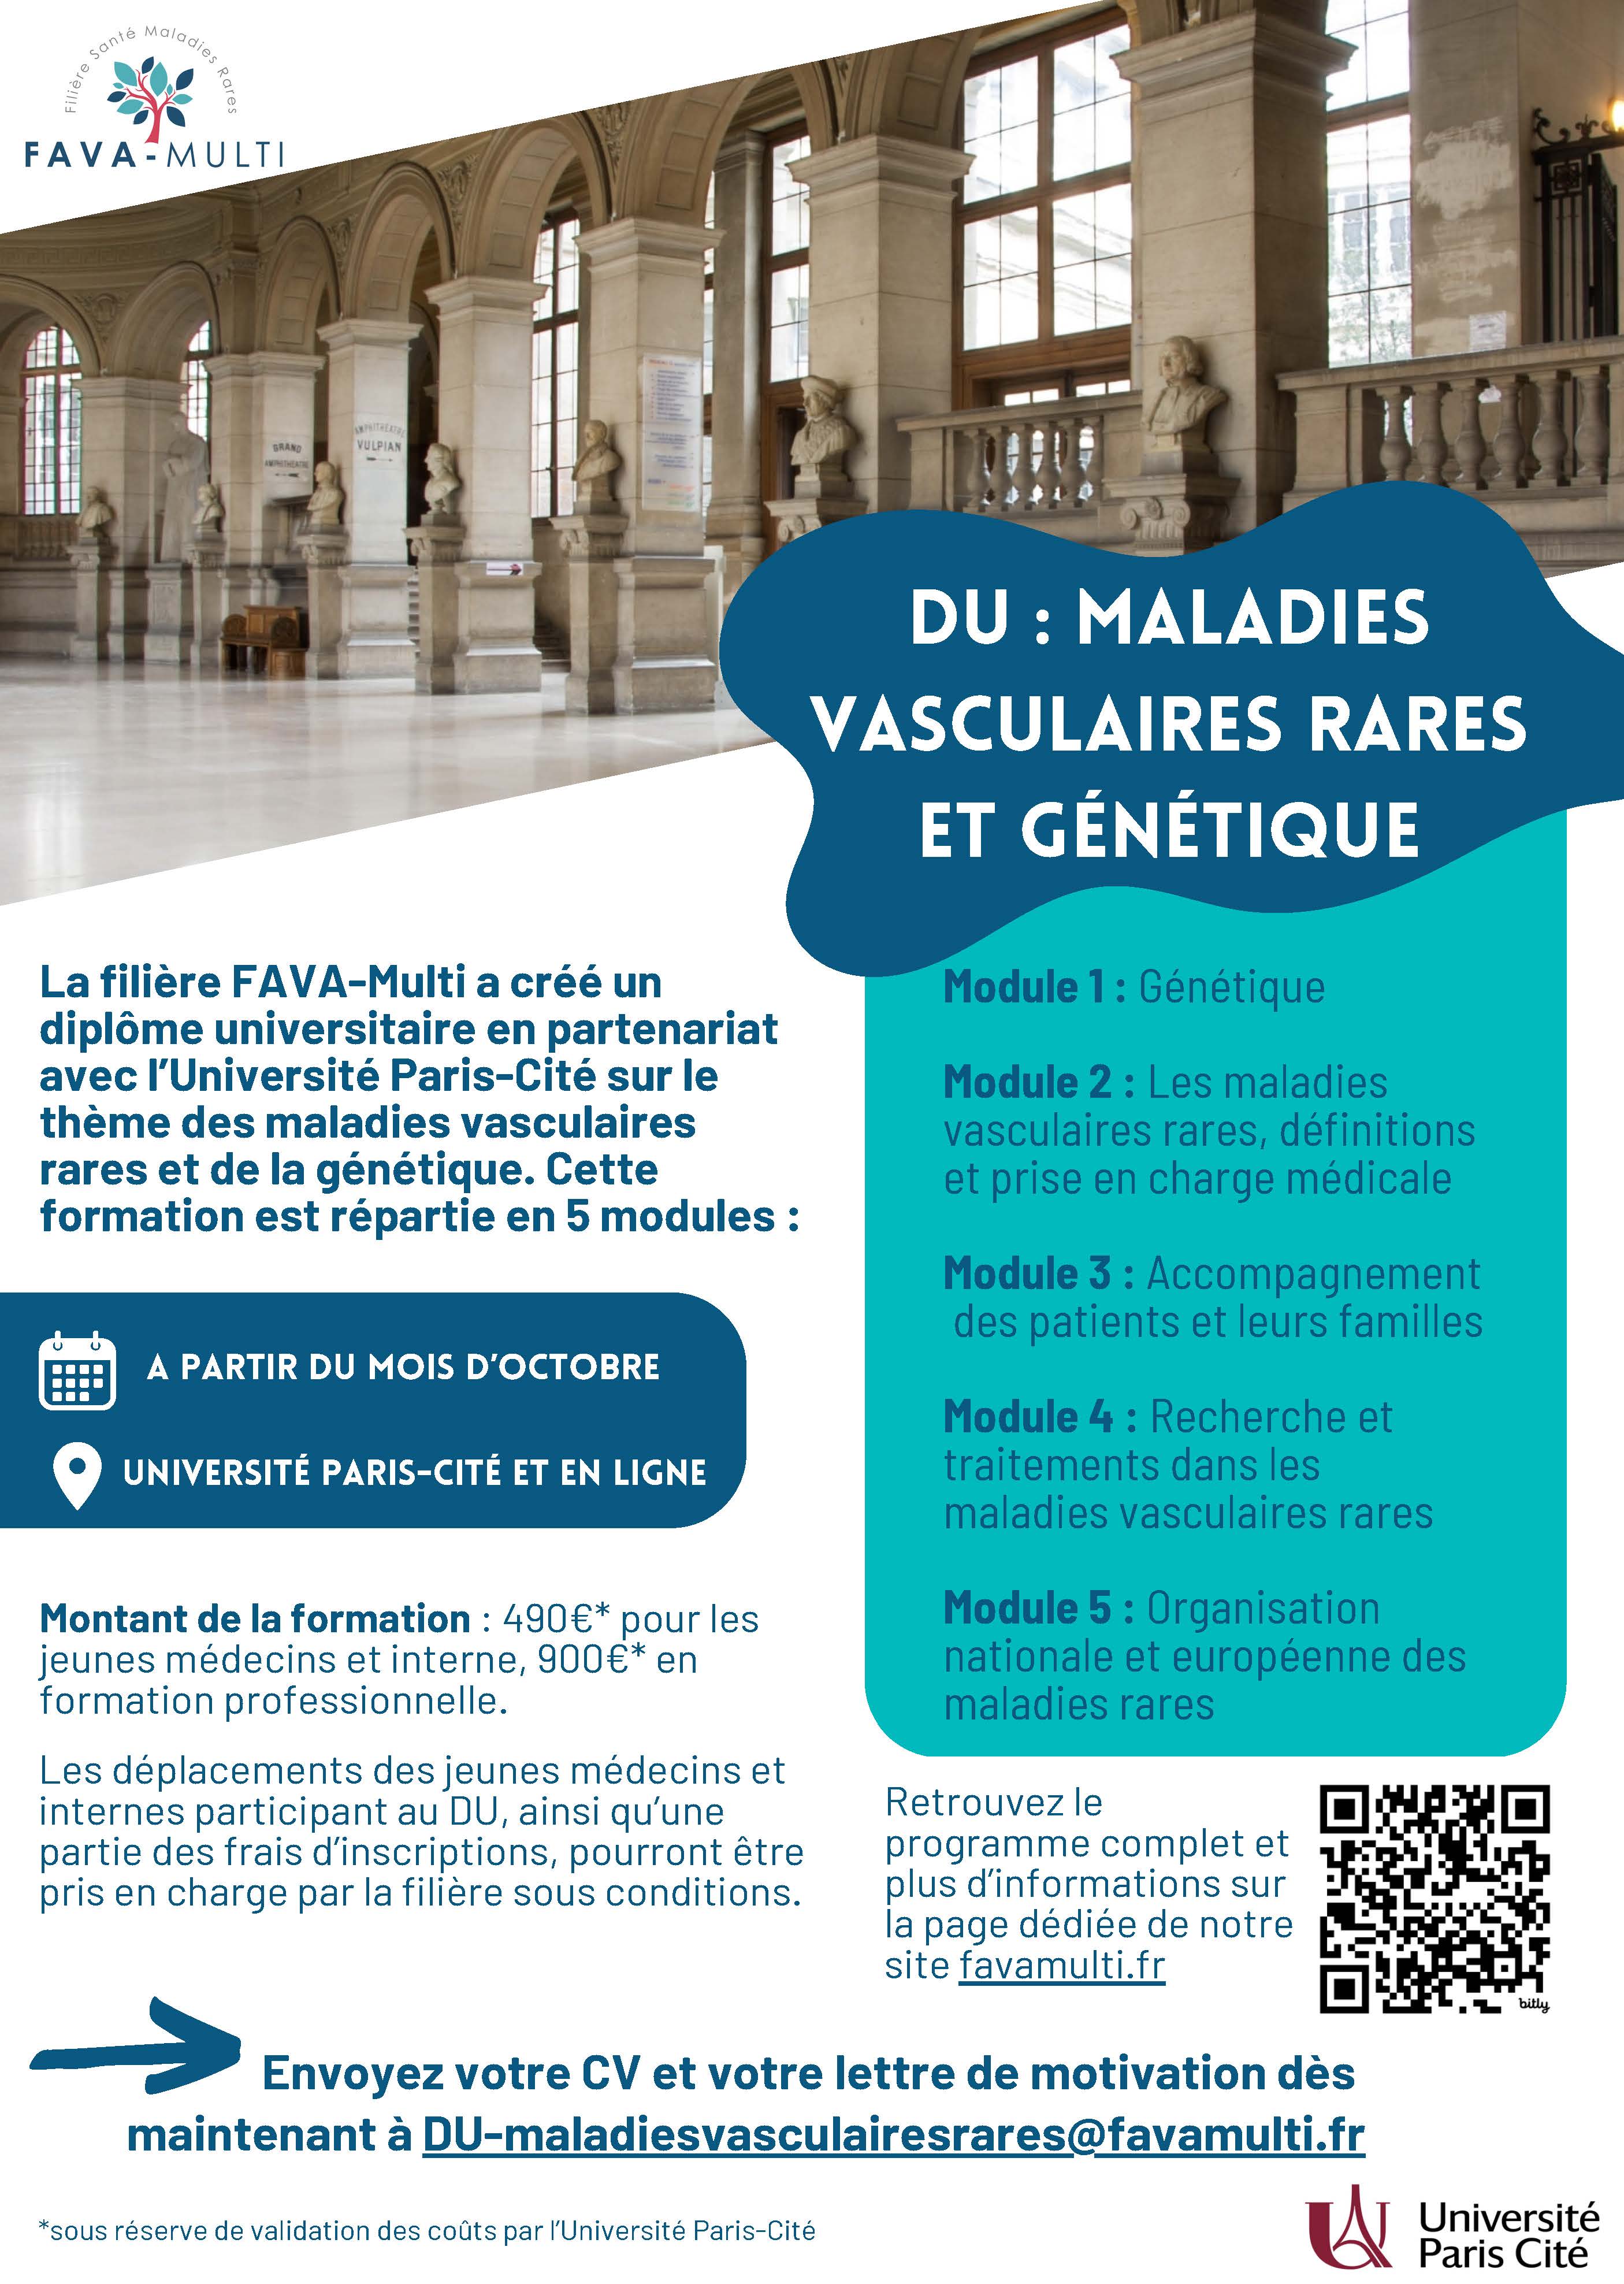 La filière FAVA-Multi a créé un diplôme universitaire en partenariat avec l’Université Paris-Cité sur le thème des maladies vasculaires rares et de la génétique. Cette formation est répartie en 5 modules :